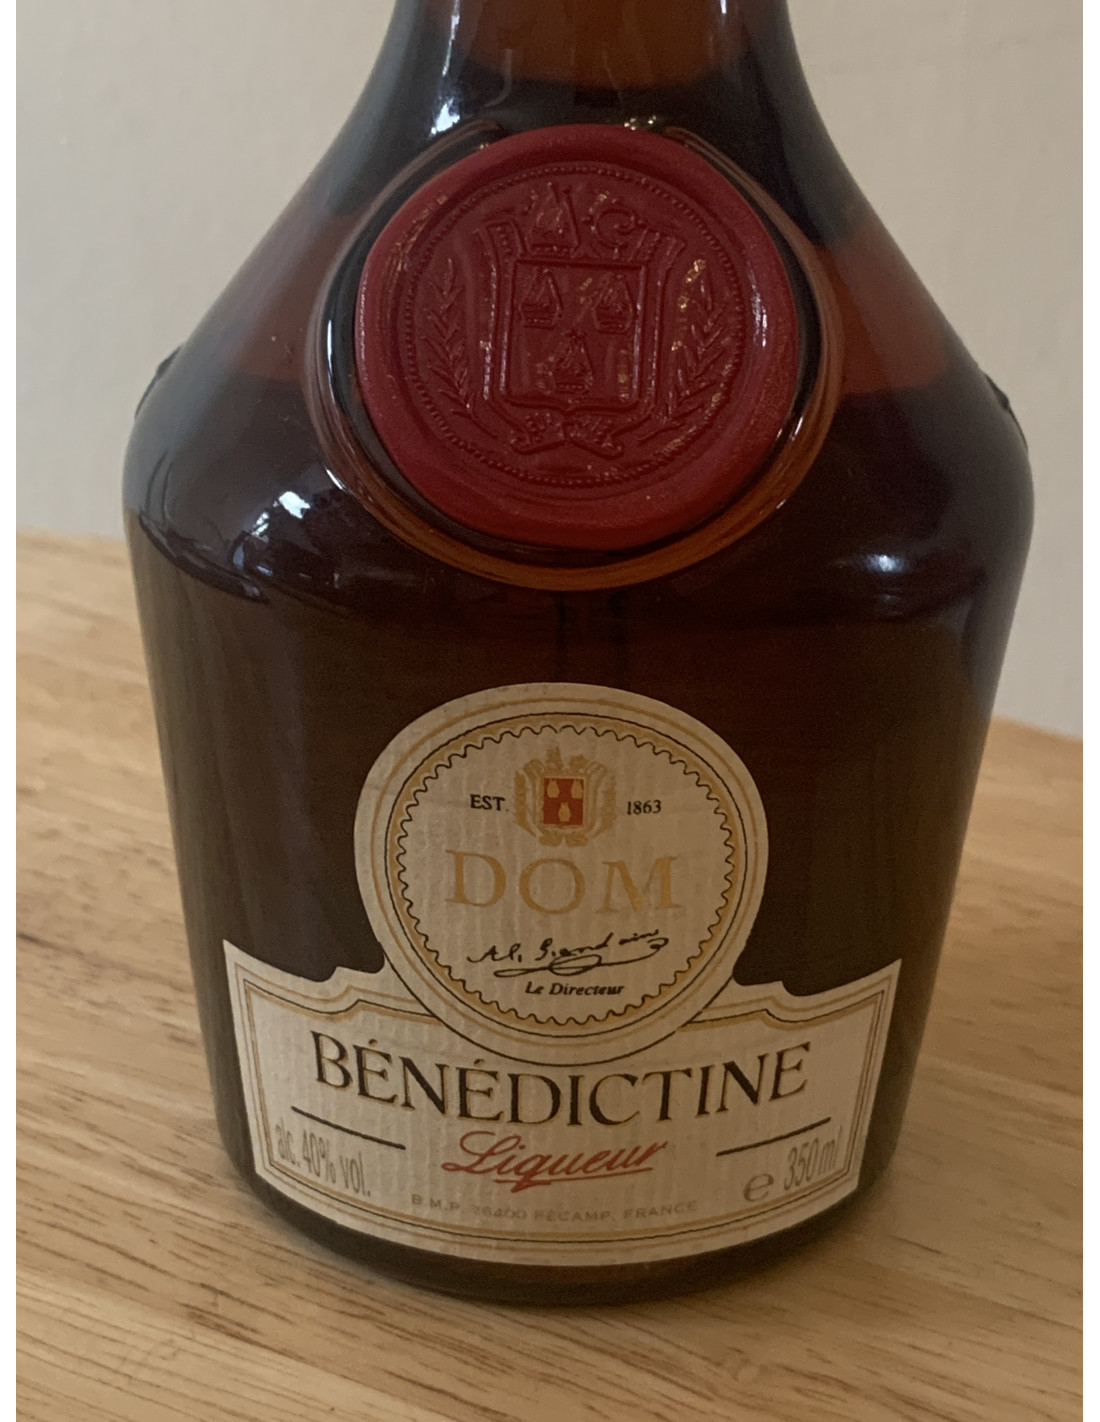 Benedictine Benedictine liqueur